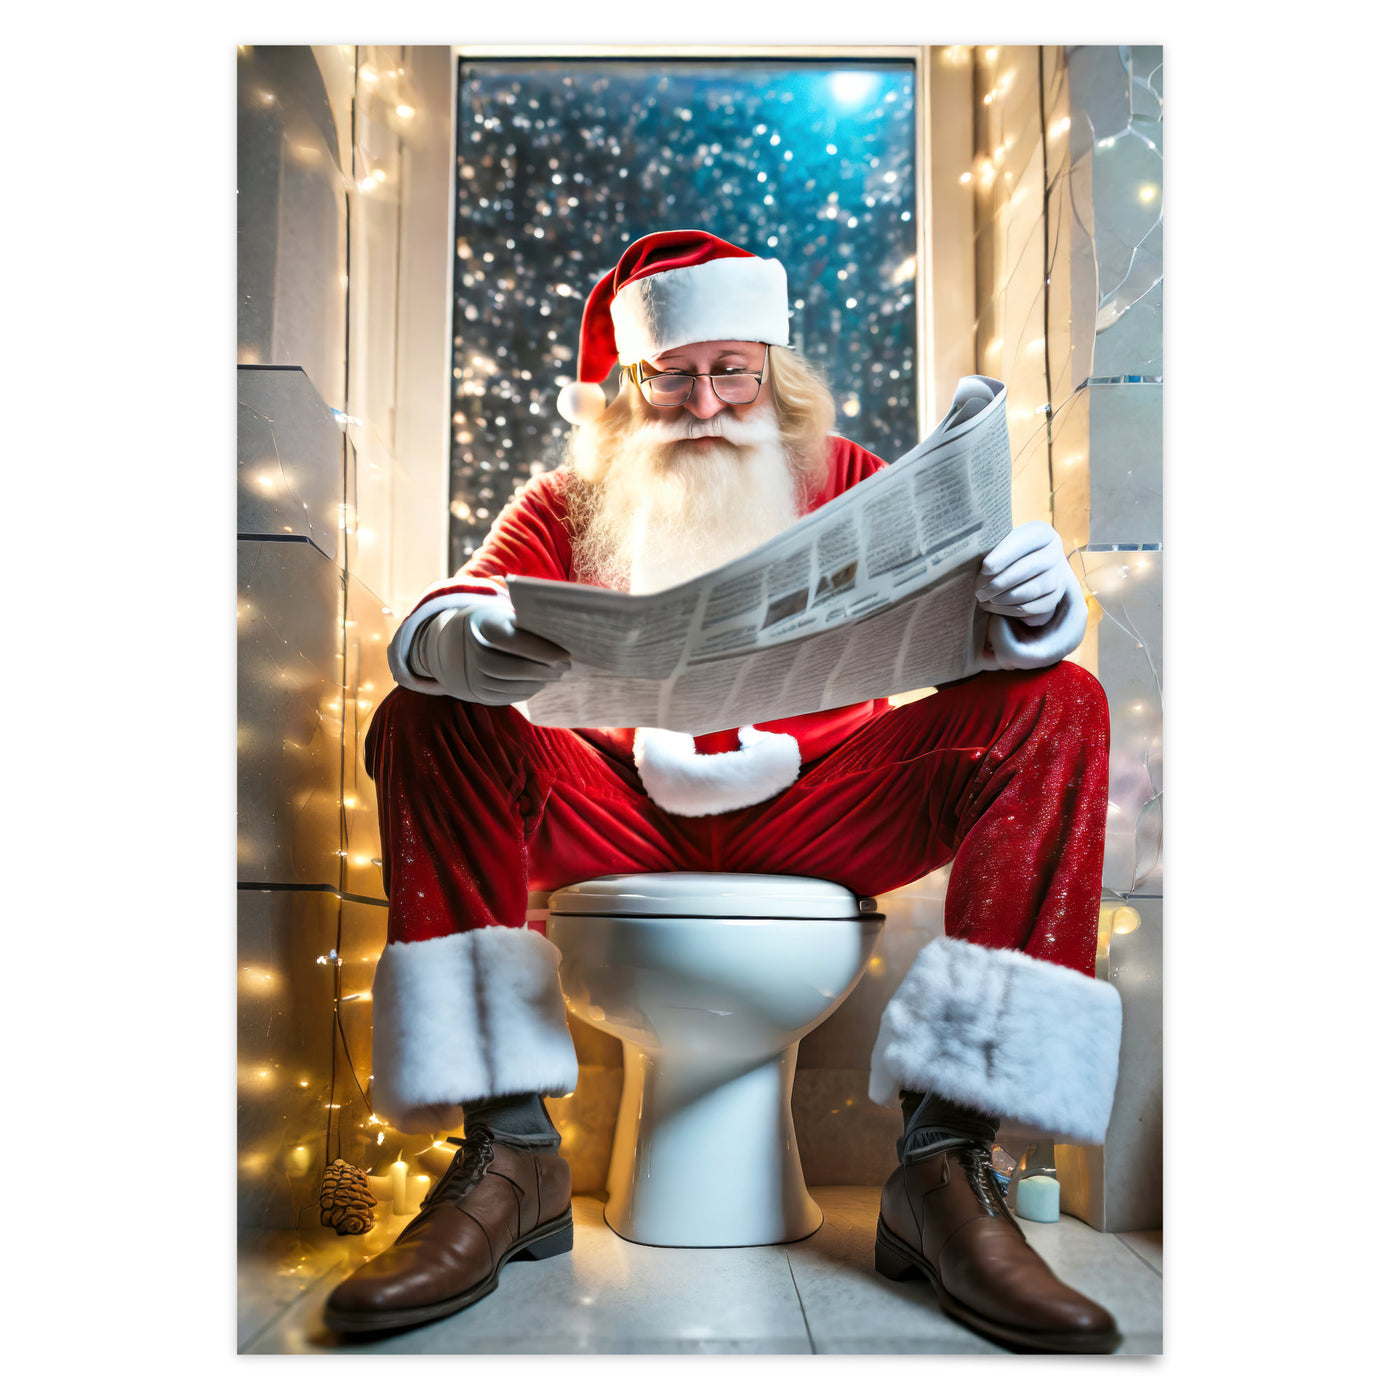 Weihnachtsmann auf Toilette Poster Gäste WC Bild Weihnachten Deko Wohndeko Wanddeko Poster Weihnachten Weihnachtsmann liest Zeitung auf Klo